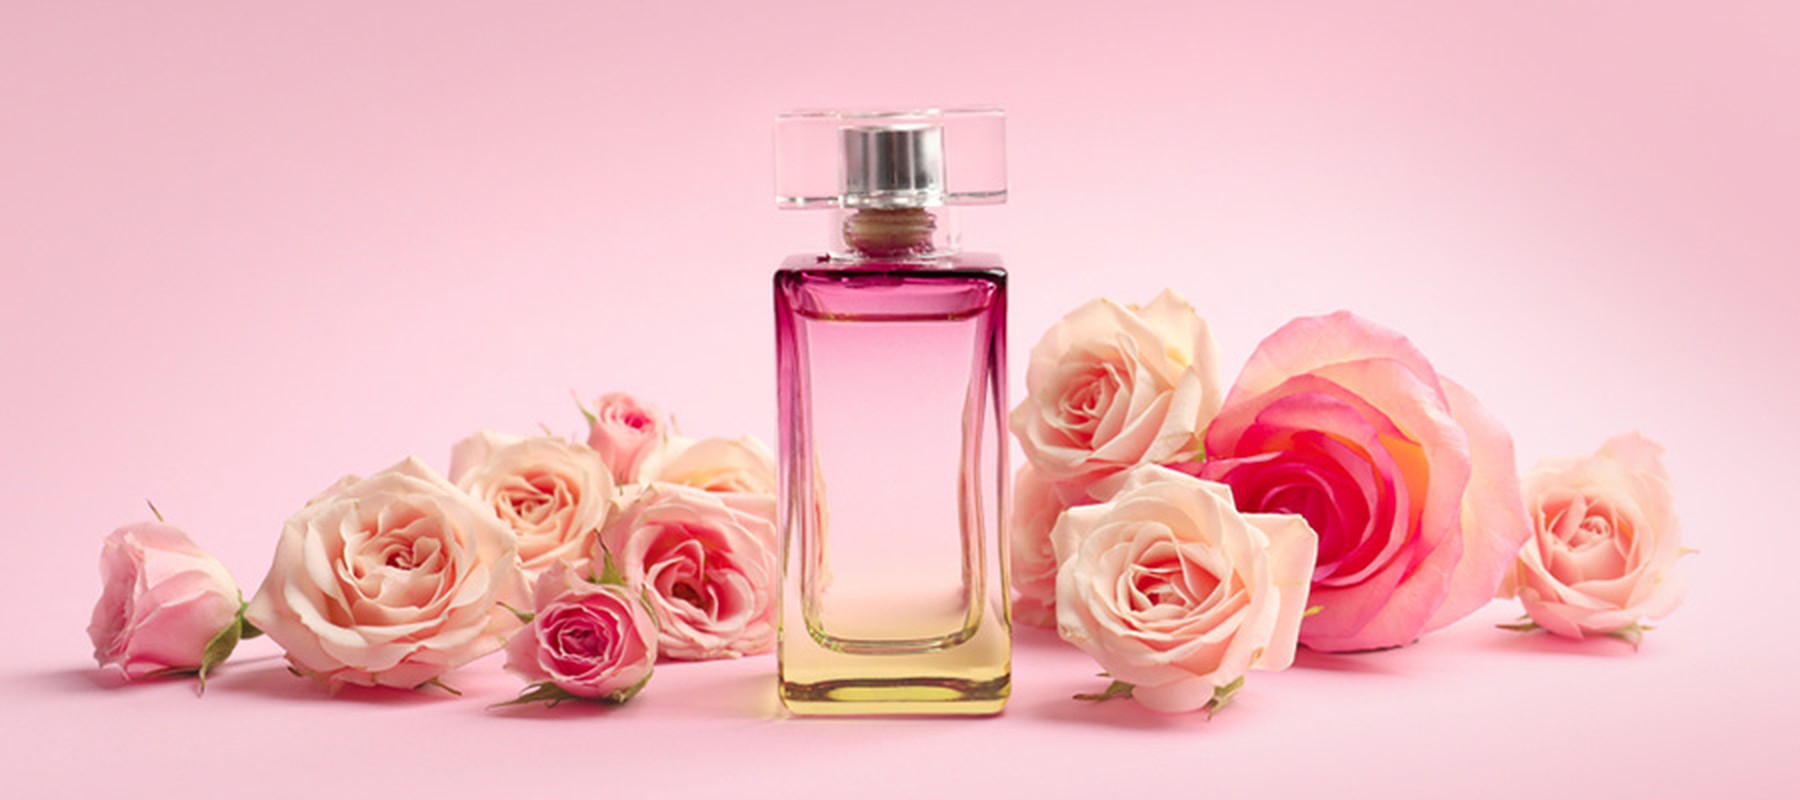 4 consejos para elegir tu perfume ideal al mejor precio